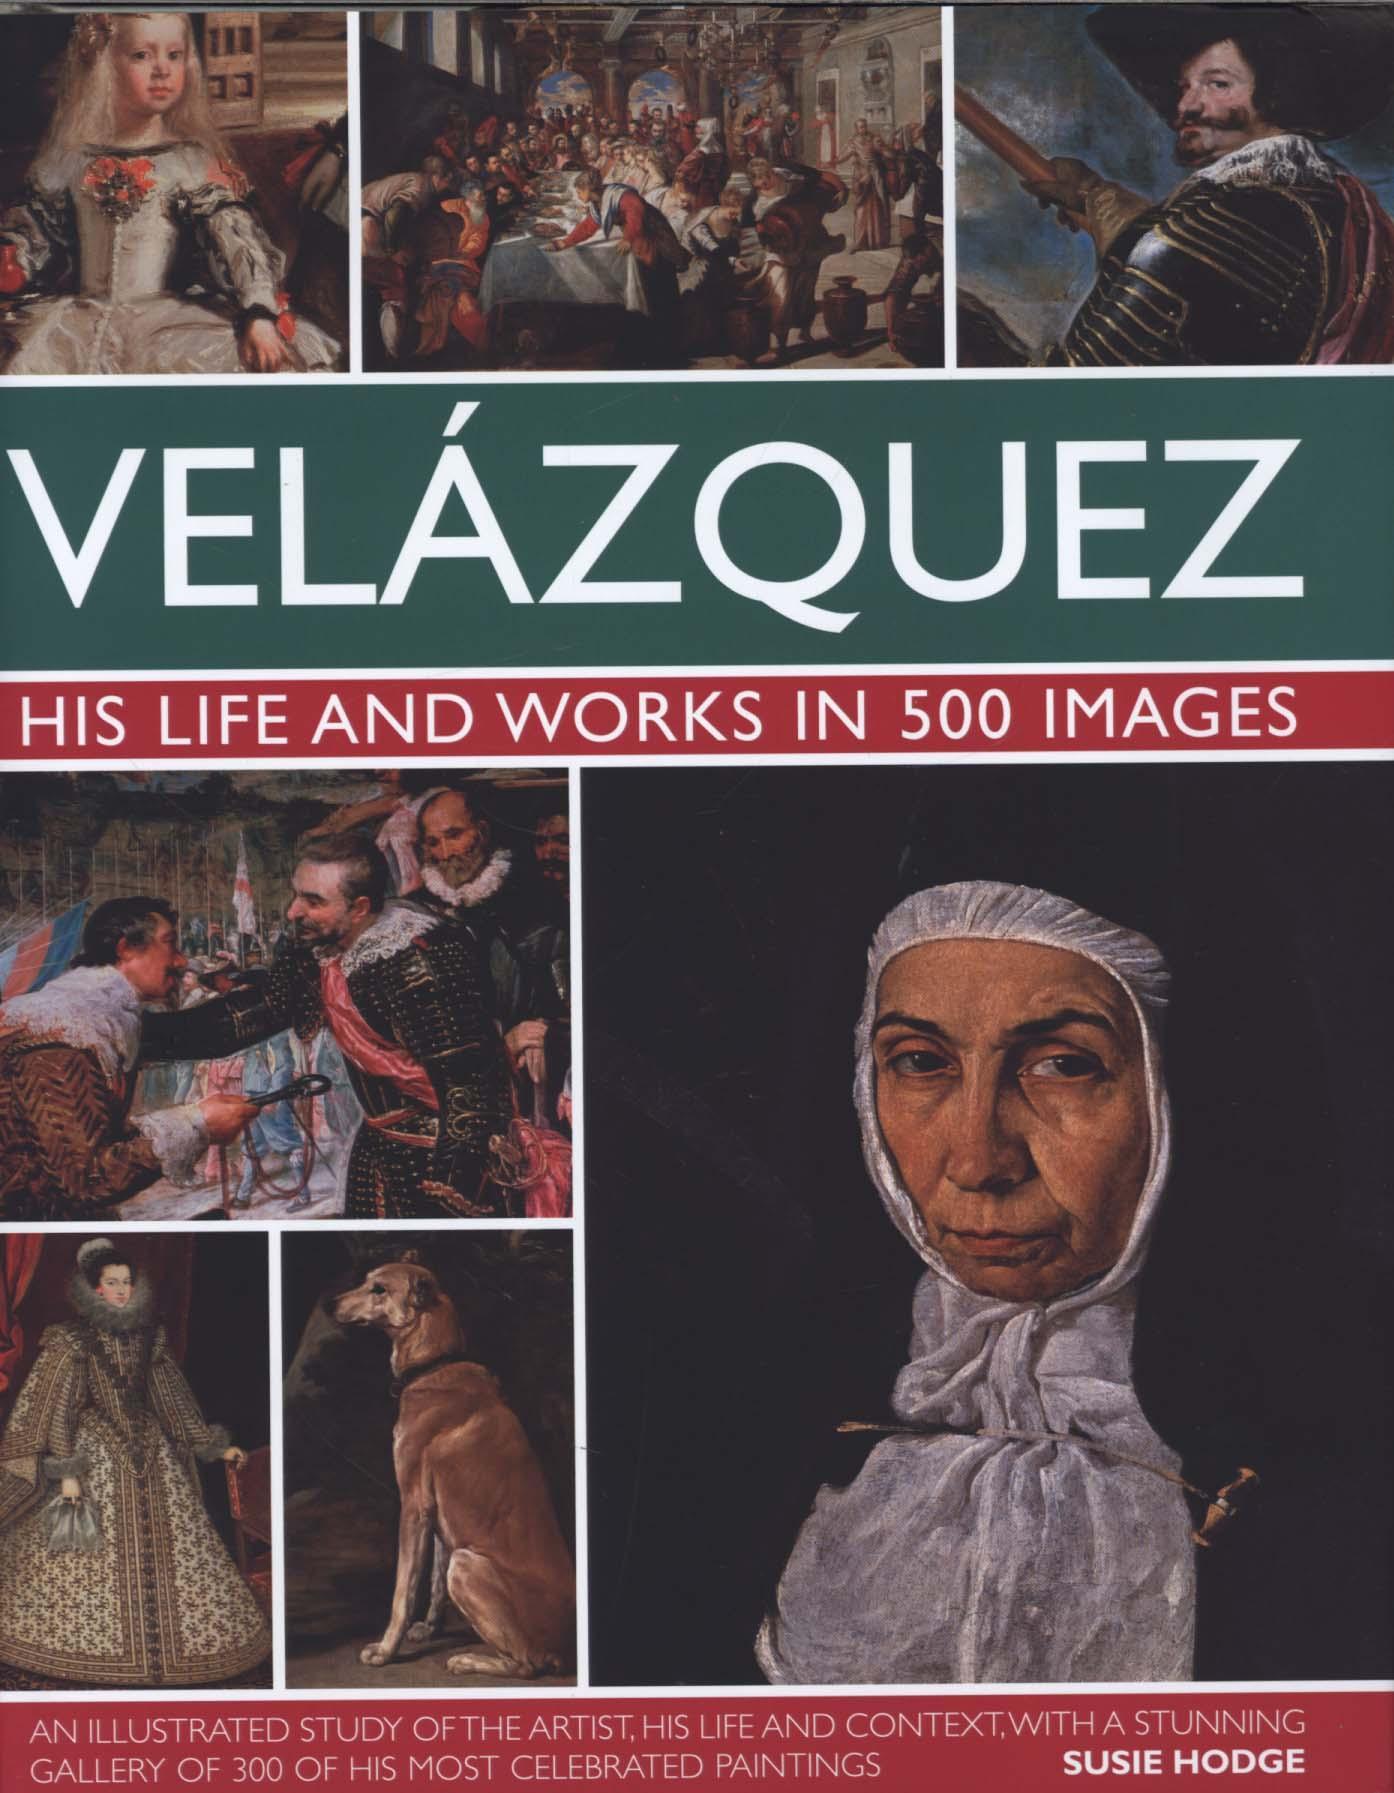 Velazquez: Life & Works in 500 Images - Susie Hodge